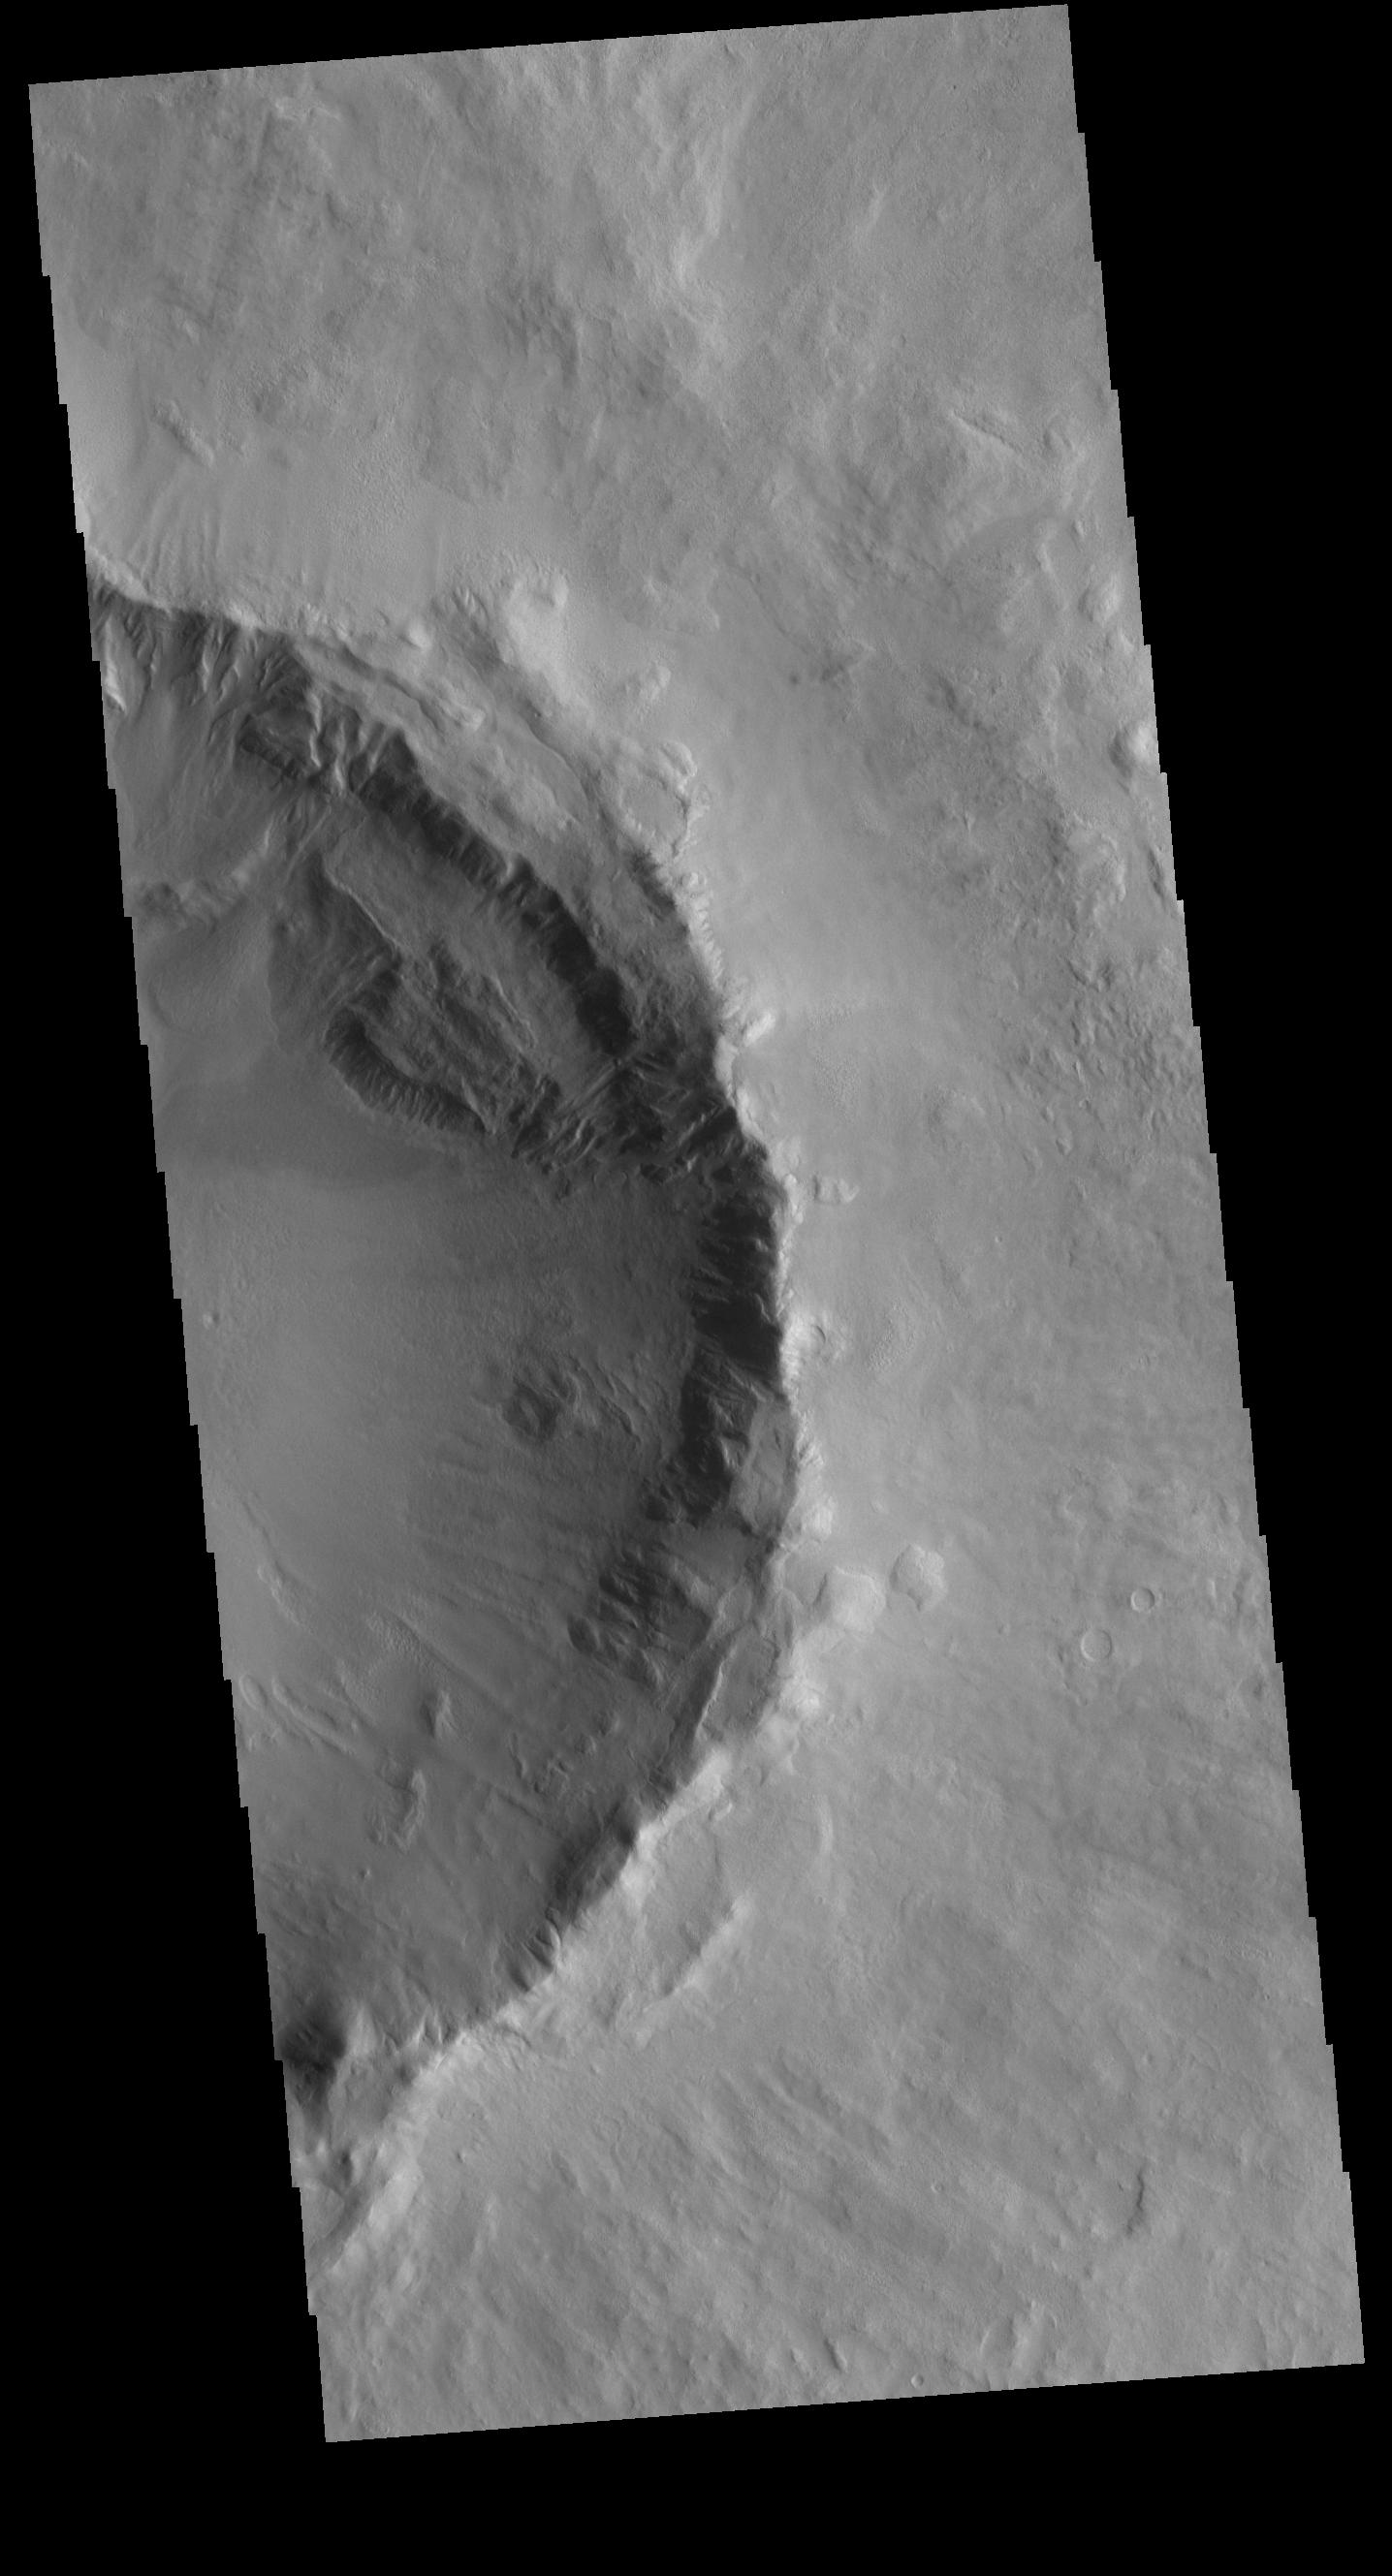 PIA23731: Utopia Planitia Crater